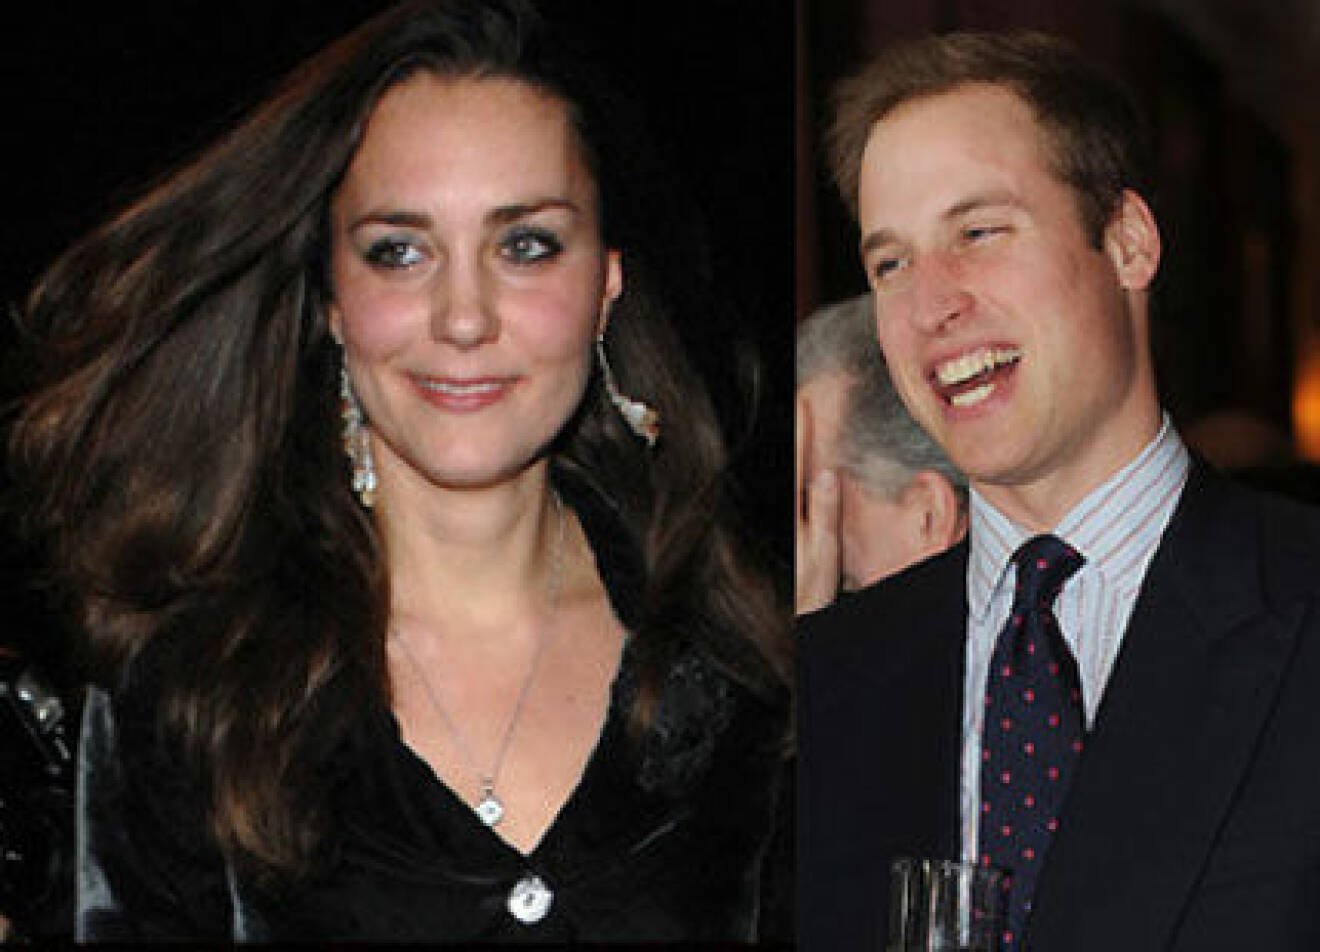 Prins William och Kate - förlovning i november?